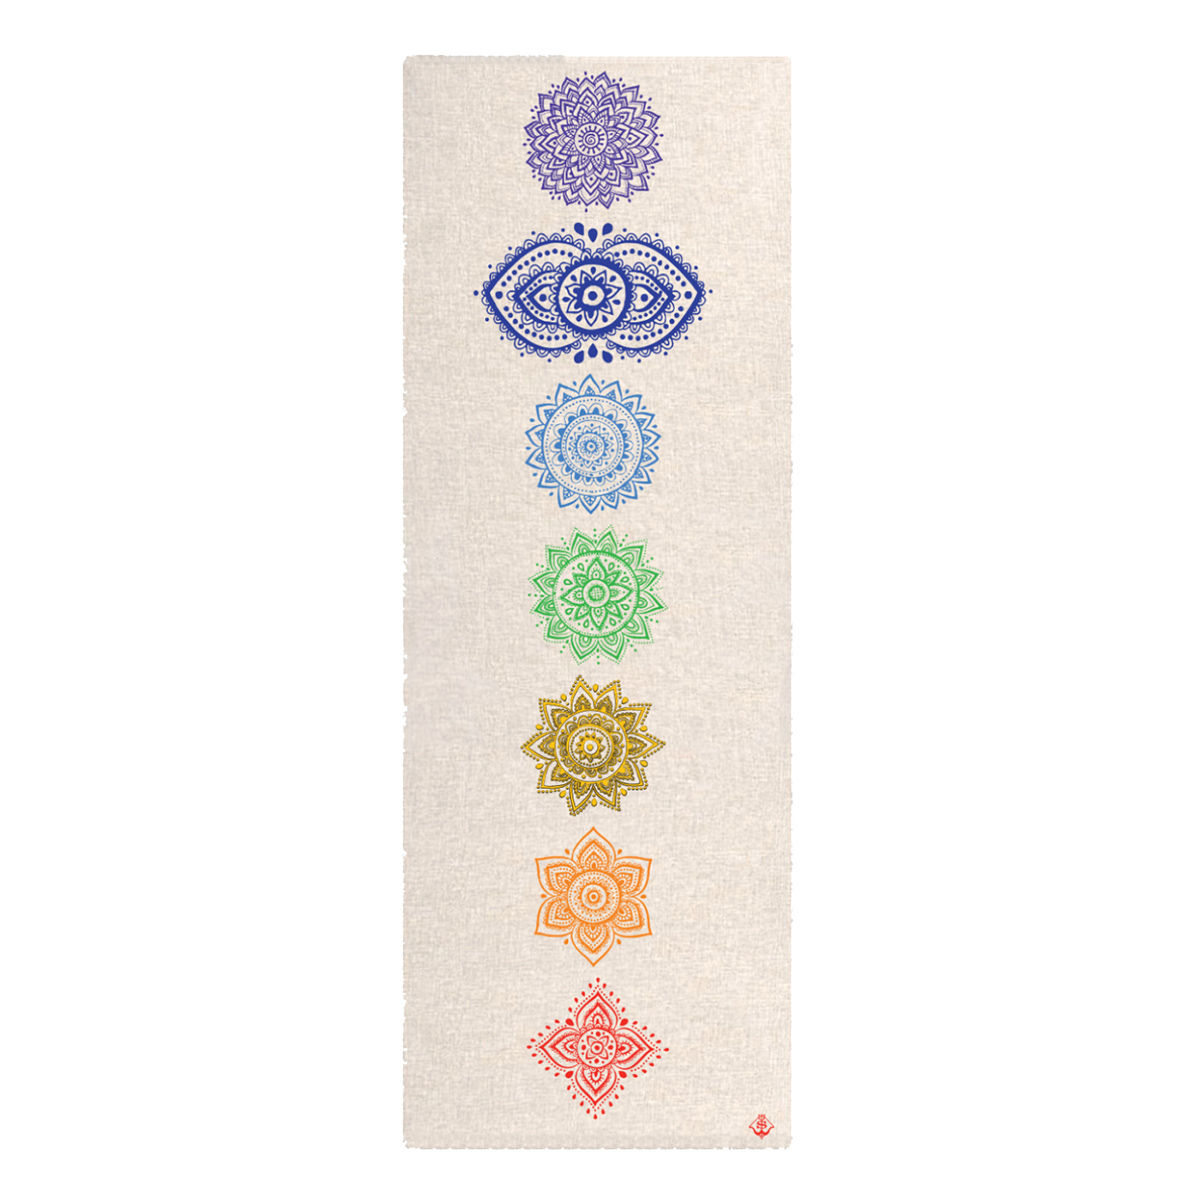 Spiritual Warrior Chakra Hemp Yoga Mat (3mm thickness) - Beige